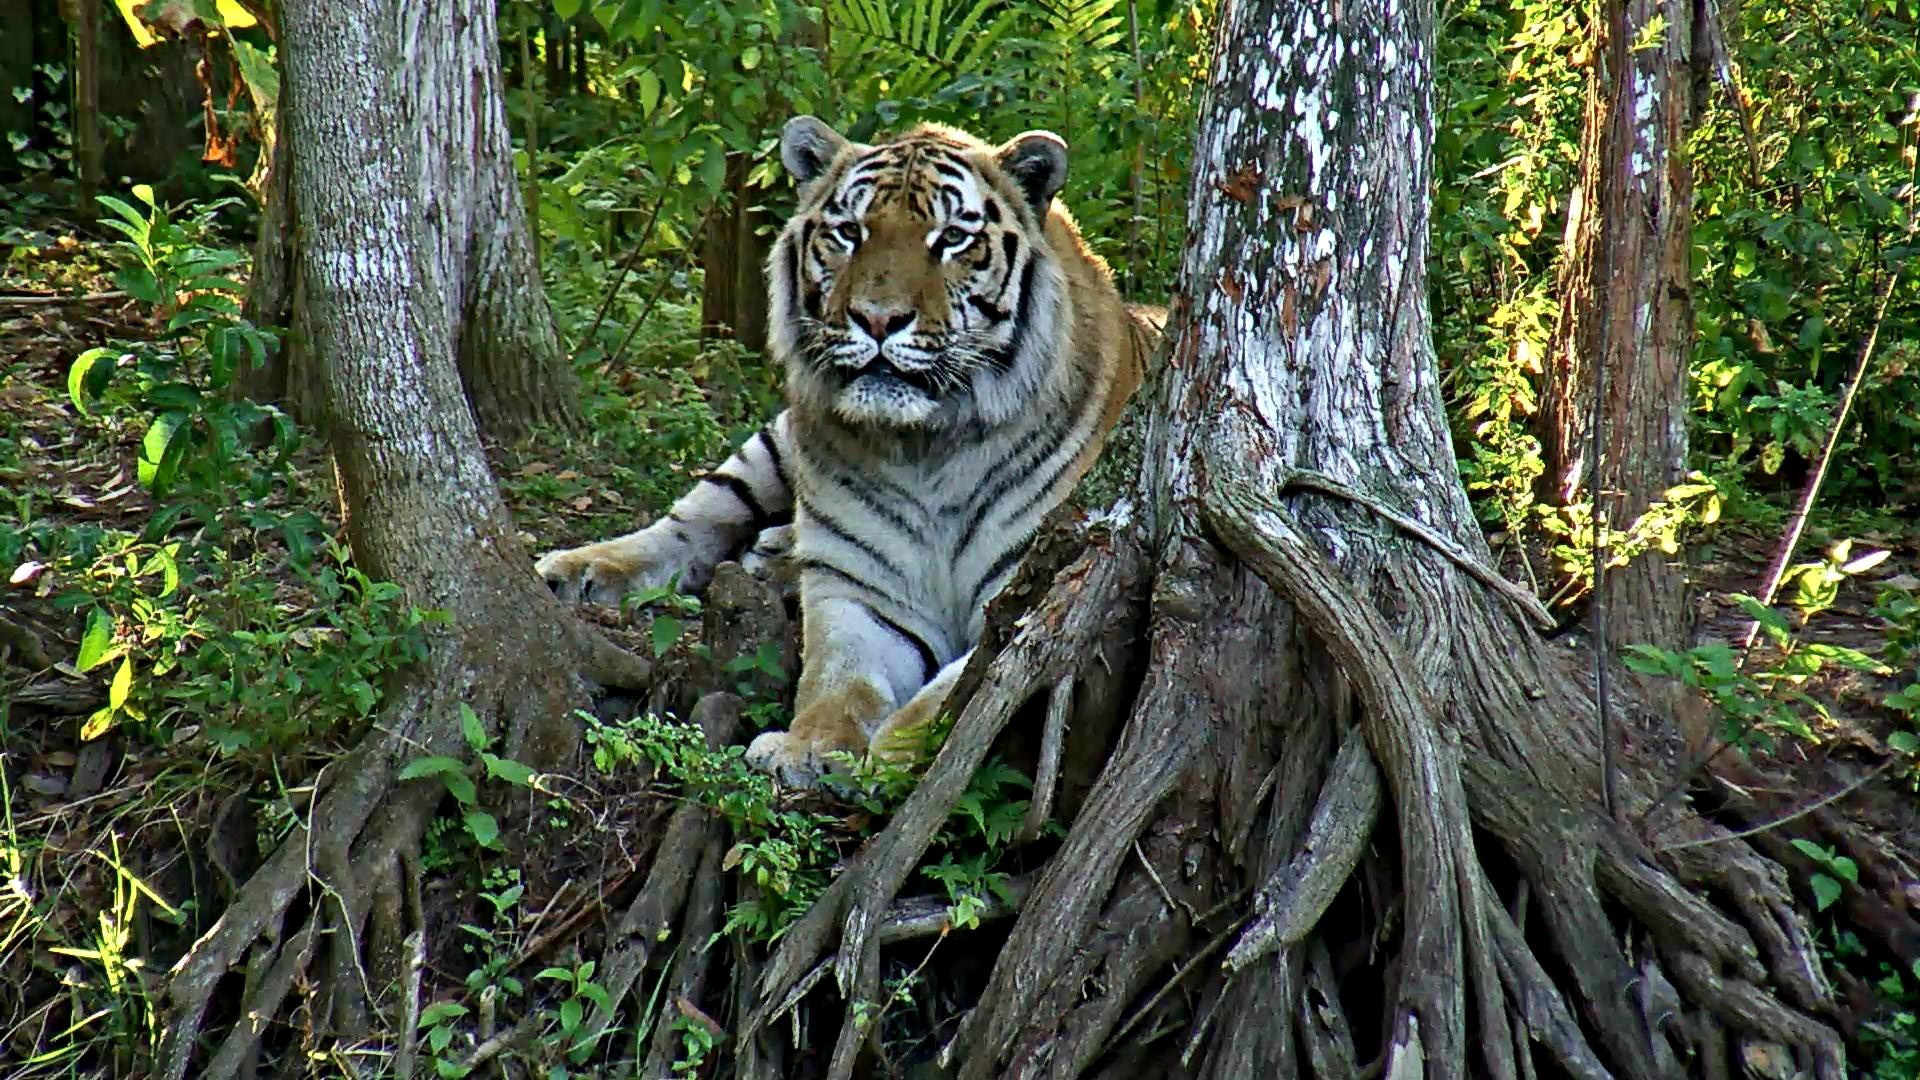 Live Tiger Cam - video of tigers at Big Cat Sanctuary | Explore.org